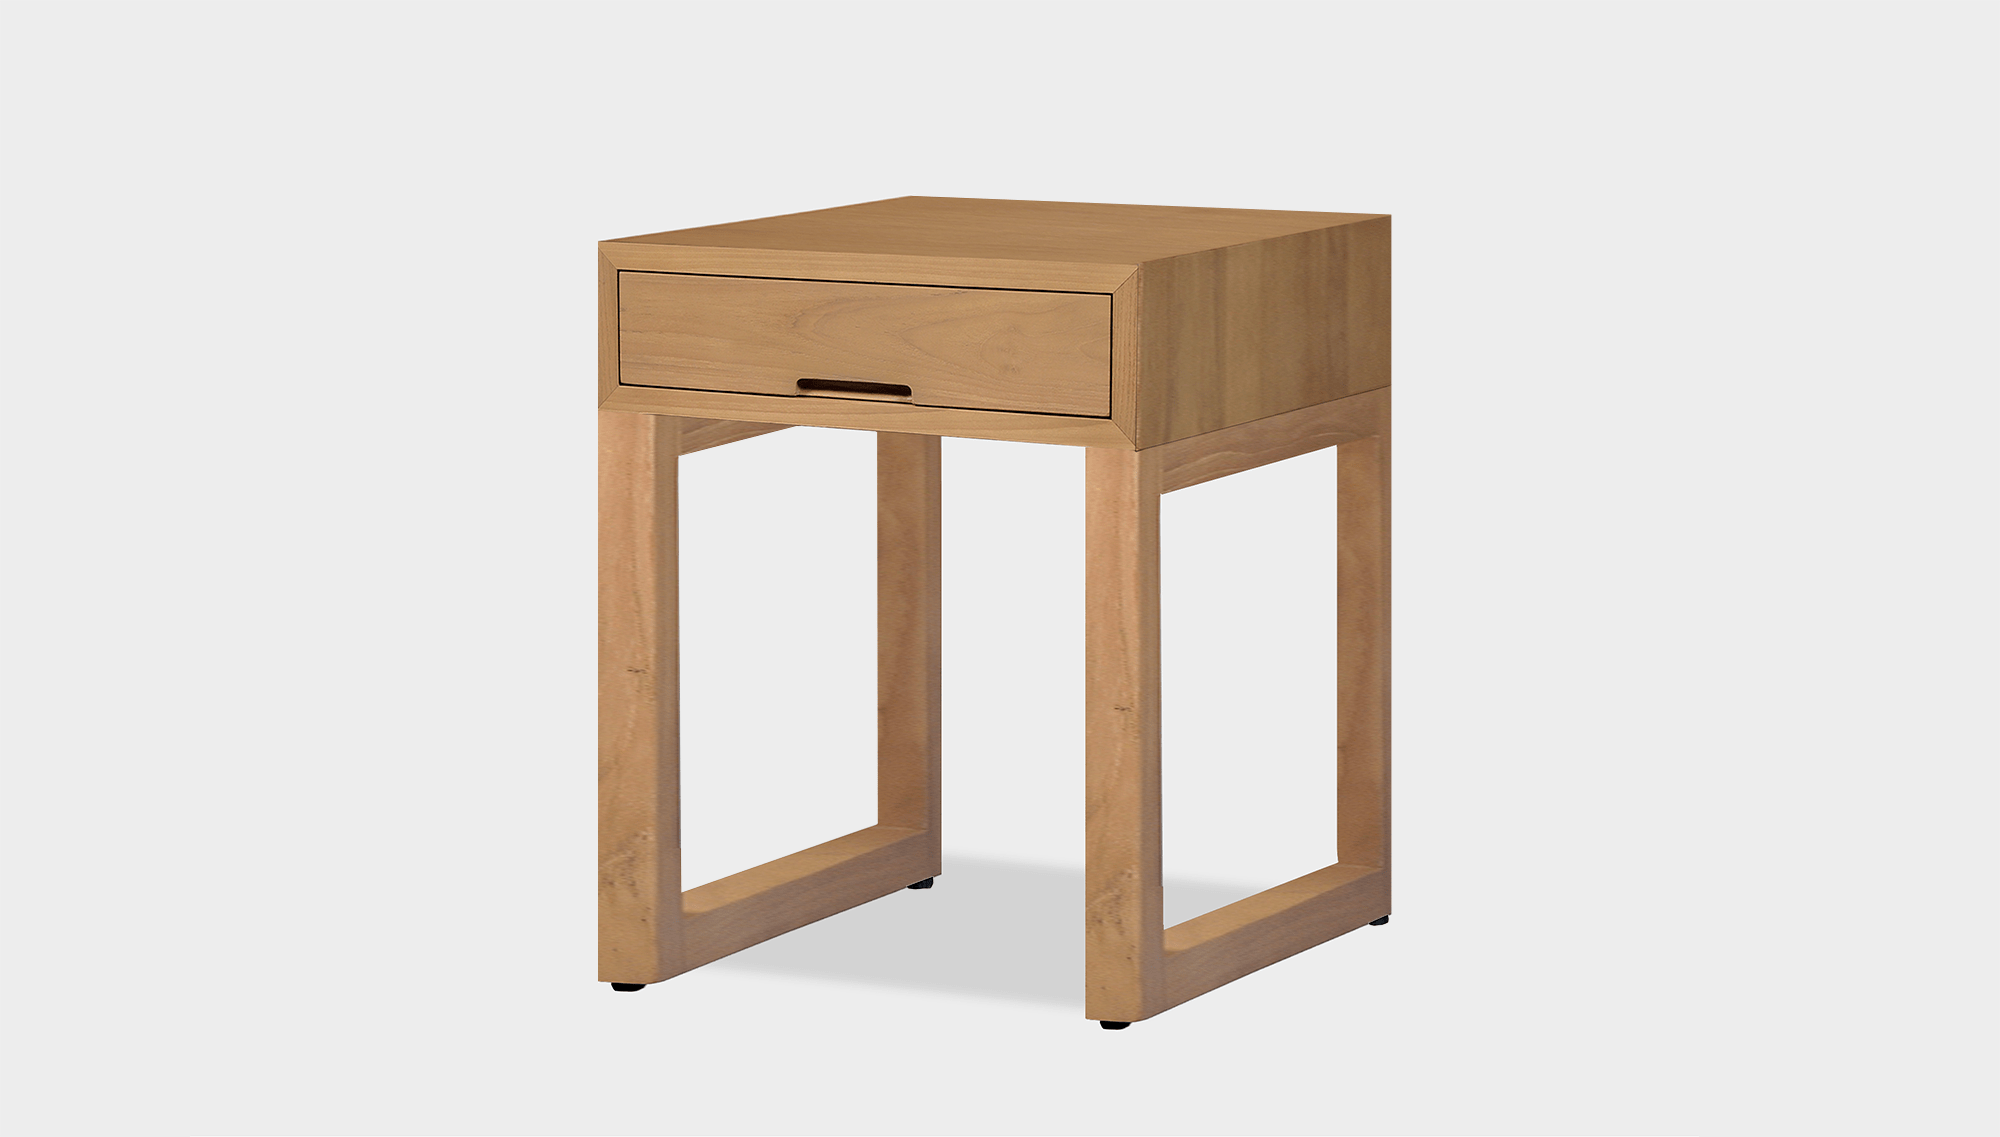 reddie-raw bedside table 45W x 45D x 55H *cm / Wood Teak~Oak / Wood Teak~Oak Suzy Bedside Table High Square